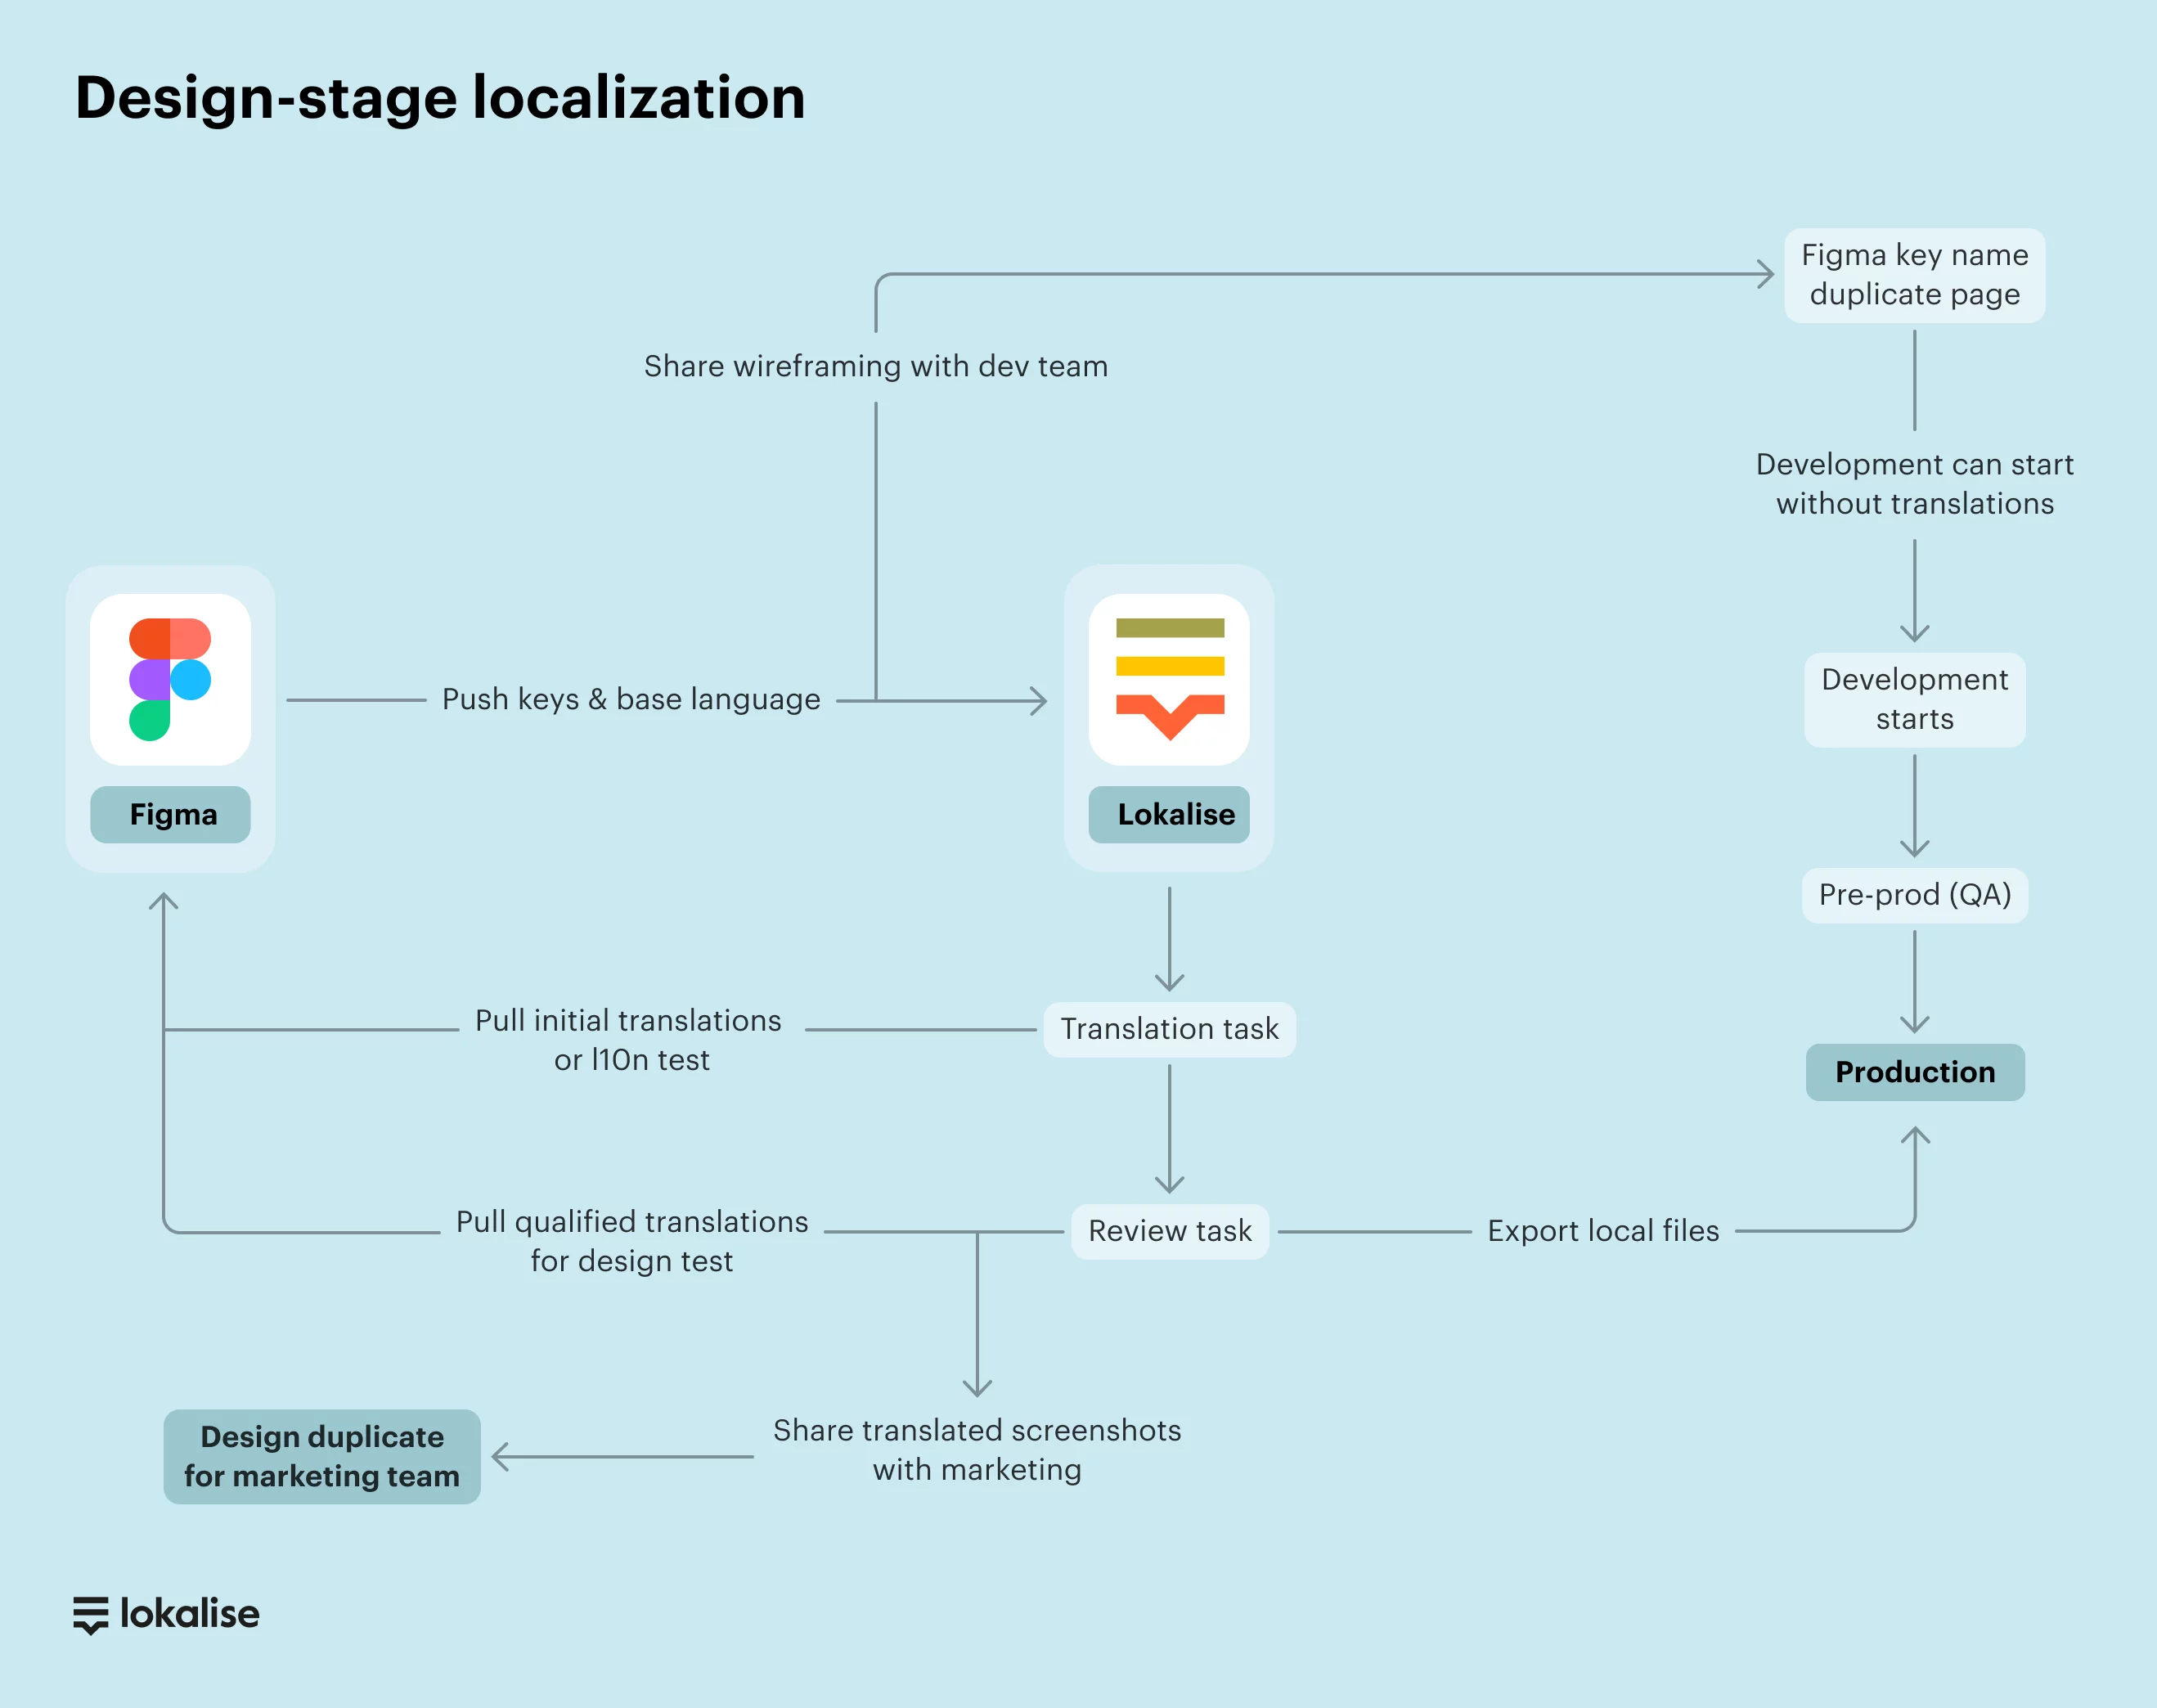 Advanced design-stage localization